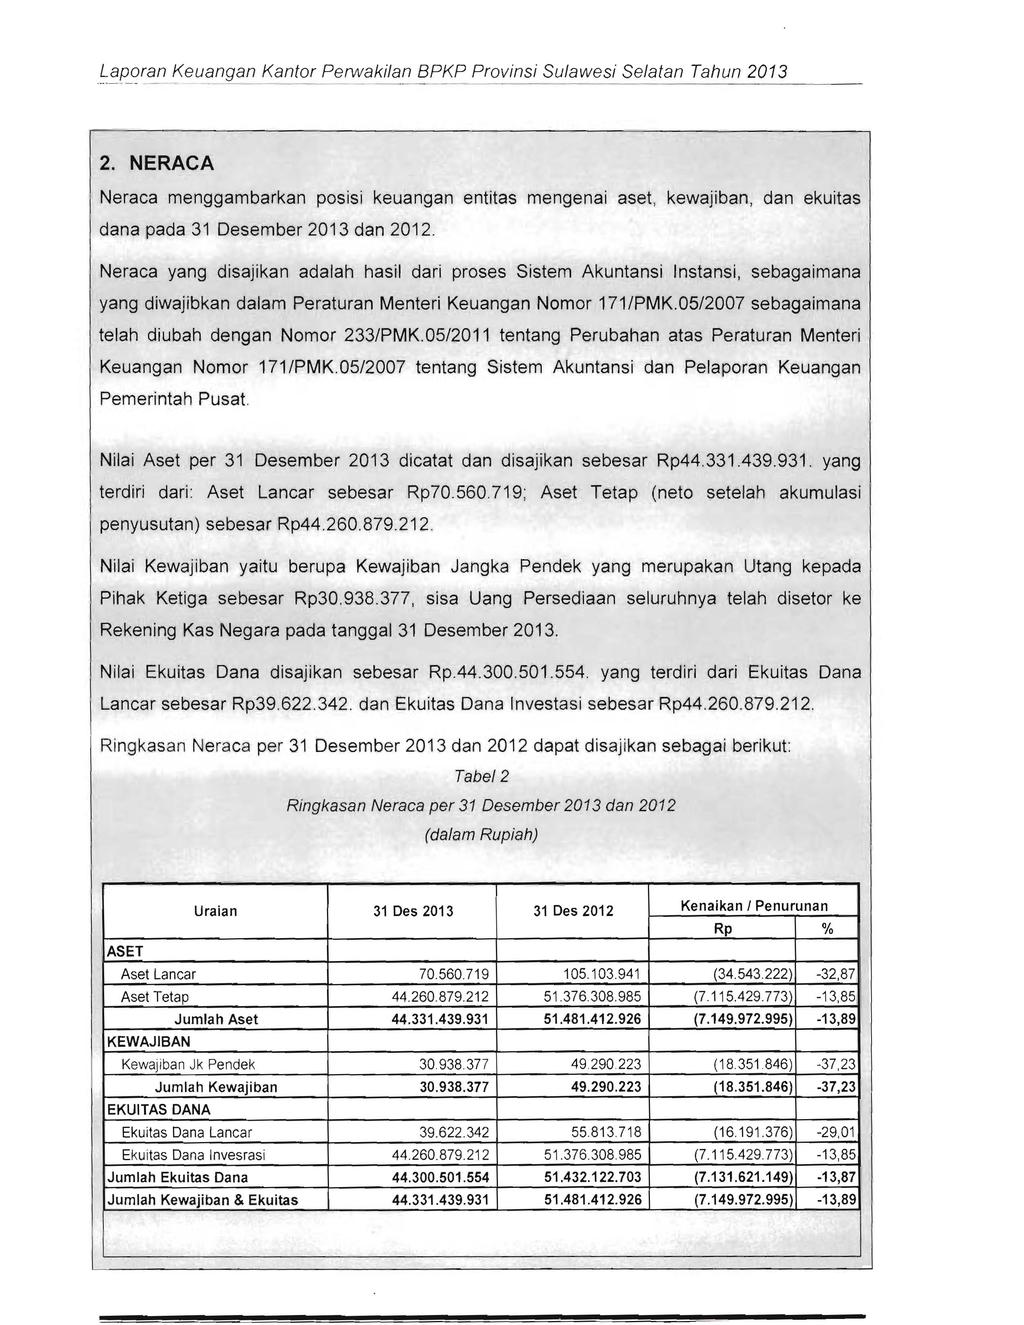 ~~fj.9ran Keuangan Kantor Perwakilan BPKP Provinsi Sulawesi Selatan Tahun 2013 2.